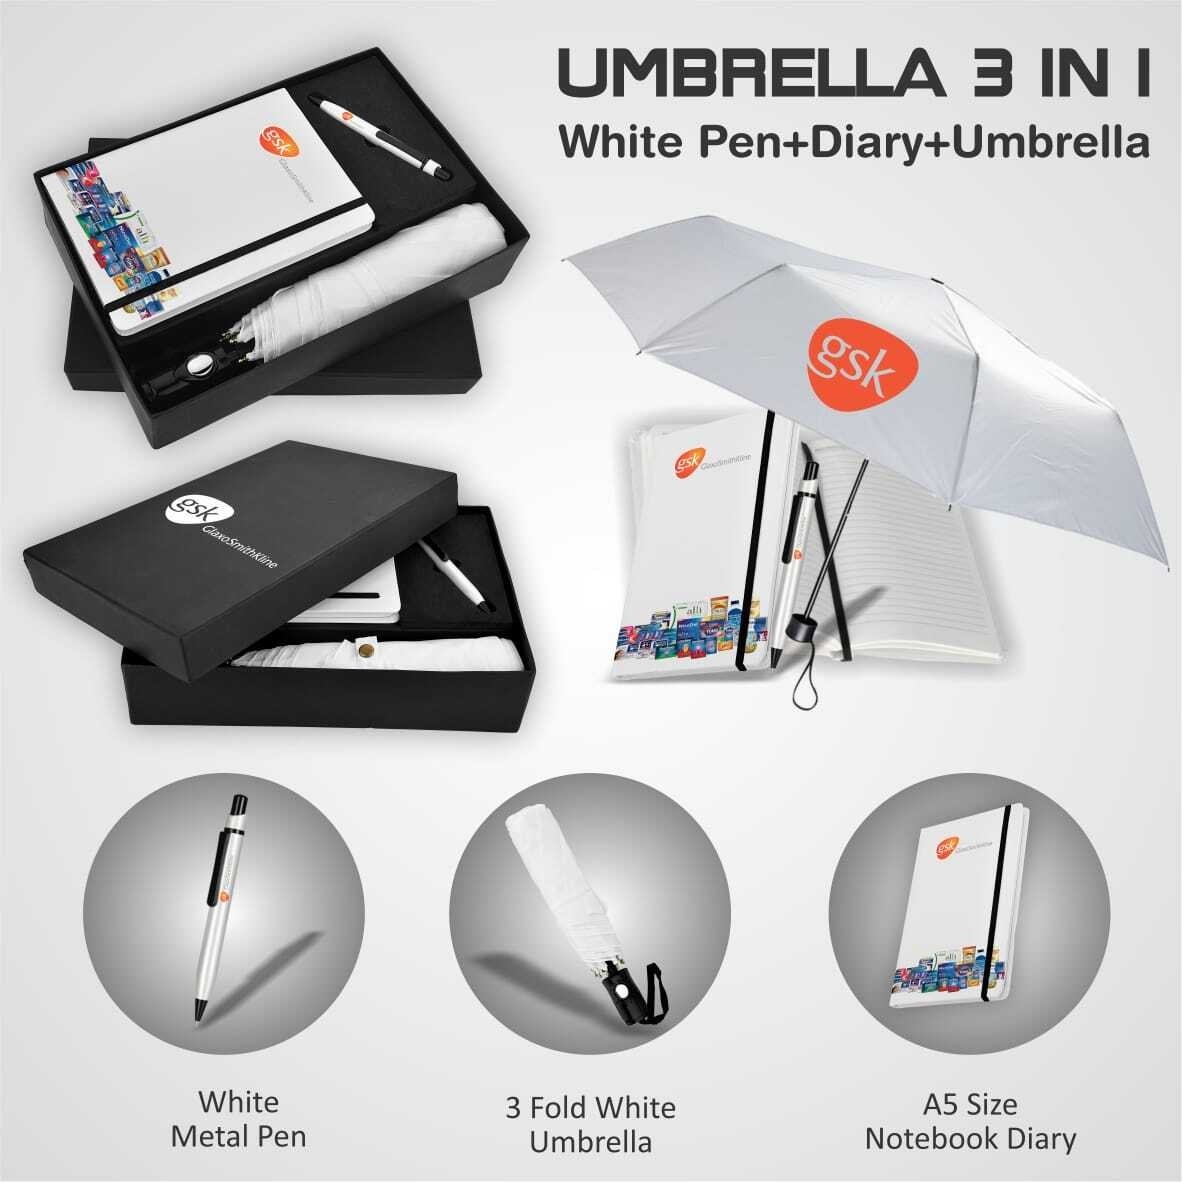 3  in  1 set :  Umbrella, White Pen, Diary.